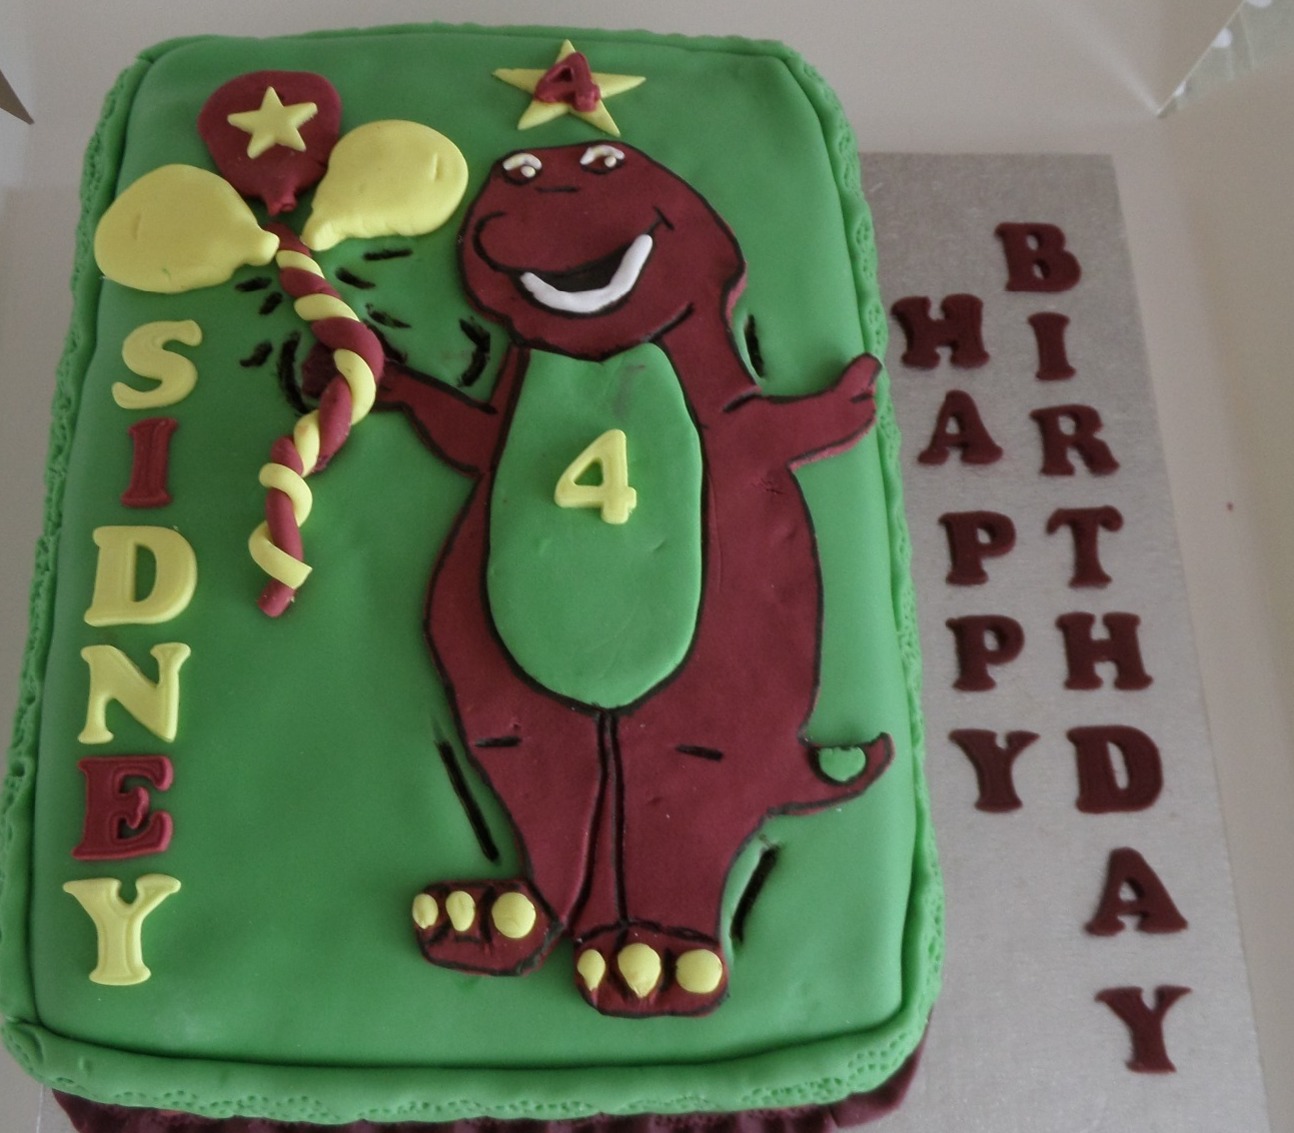 "Barney" inspired birthday